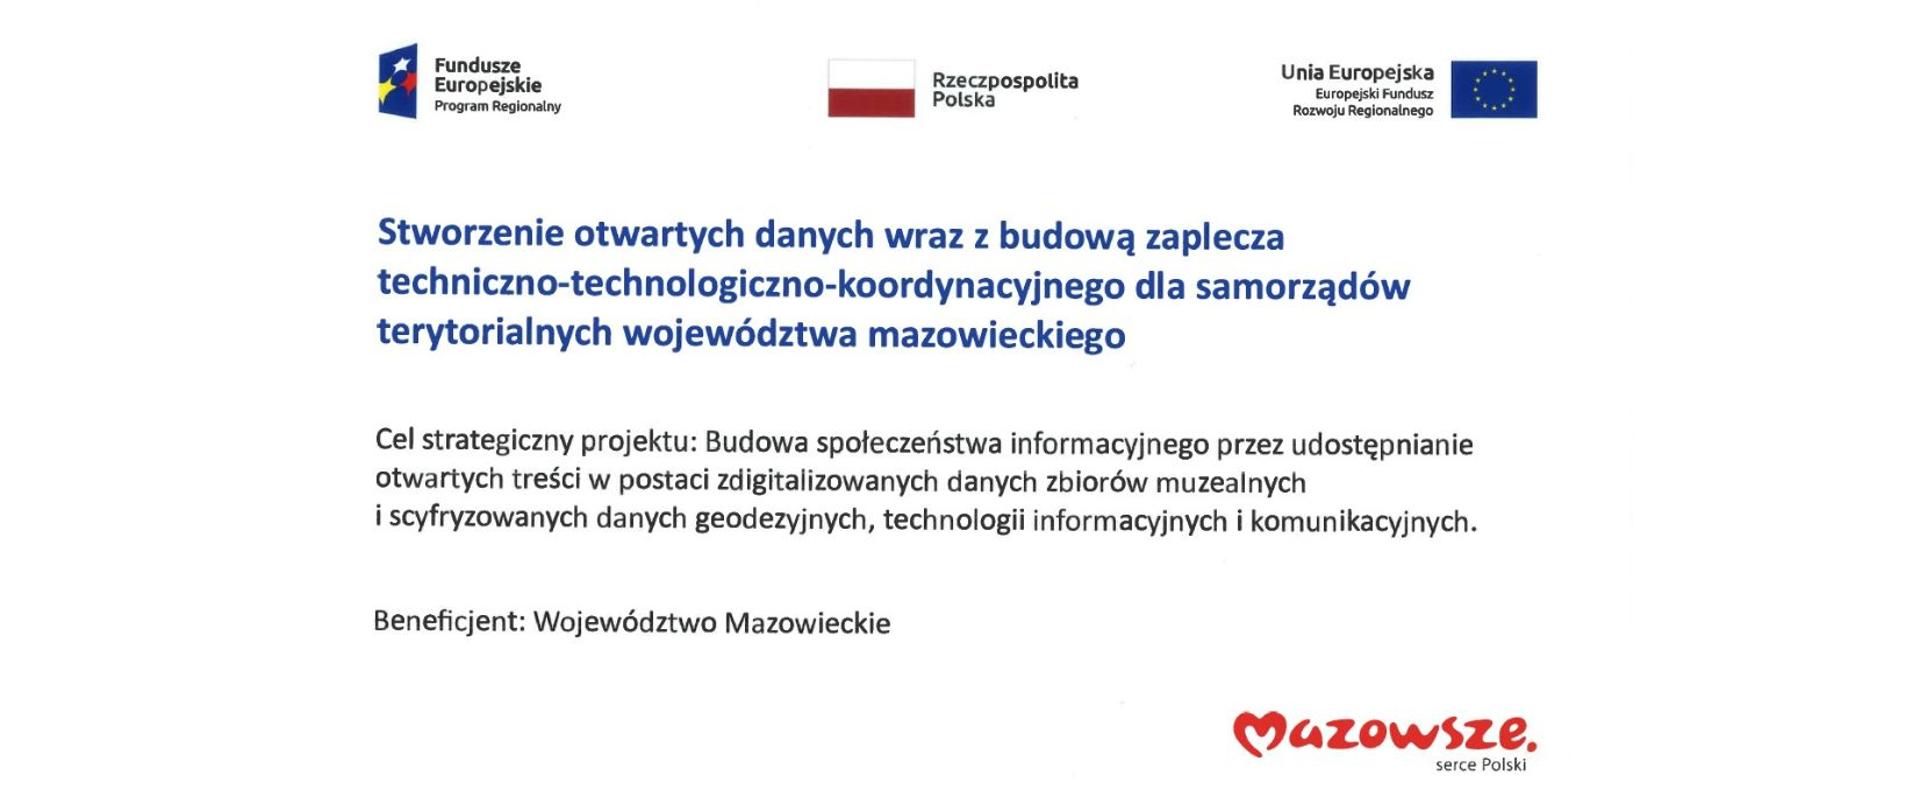 Informacje o Projekcie na białym tle. W grafice logotypy: "Fundusze Europejskie Program Regionalny, "Mazowsze serce Polski", Flaga Polski i Flaga Unii Europejskiej.